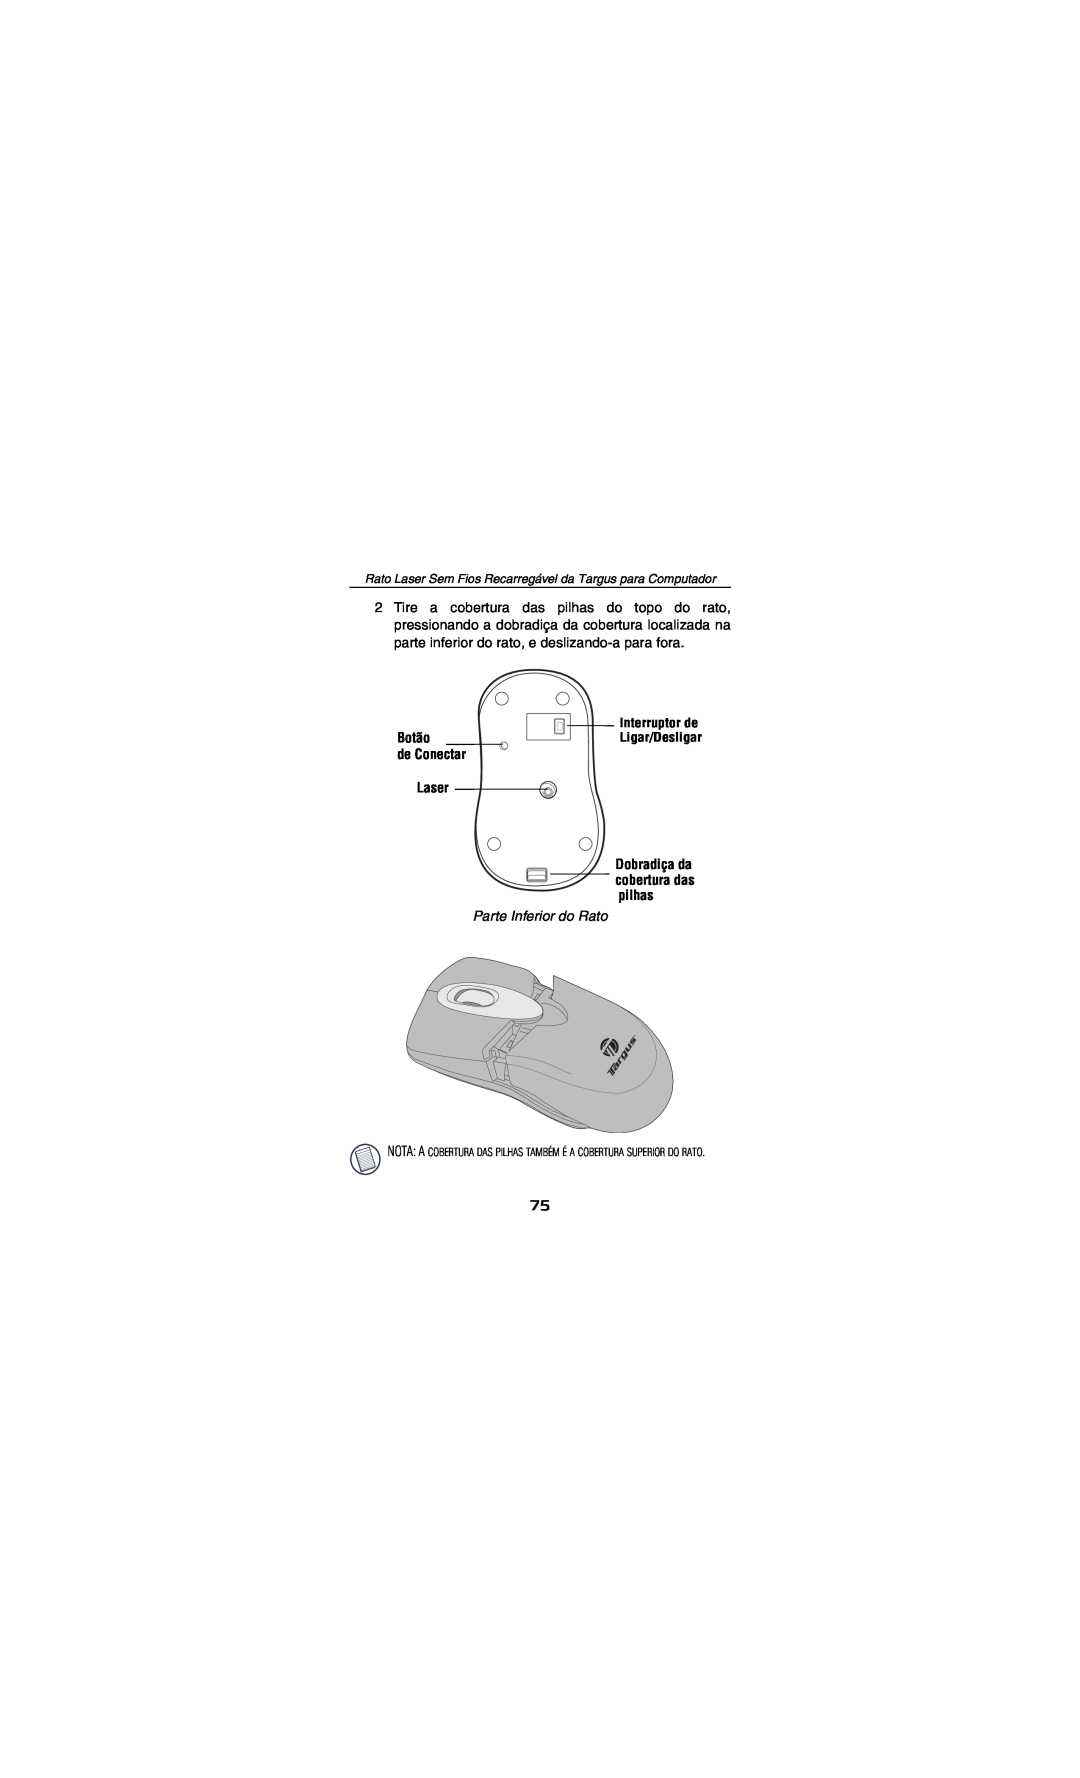 Targus AMW15EU specifications Botão de Conectar Laser, Parte Inferior do Rato, Dobradiça da cobertura das pilhas 